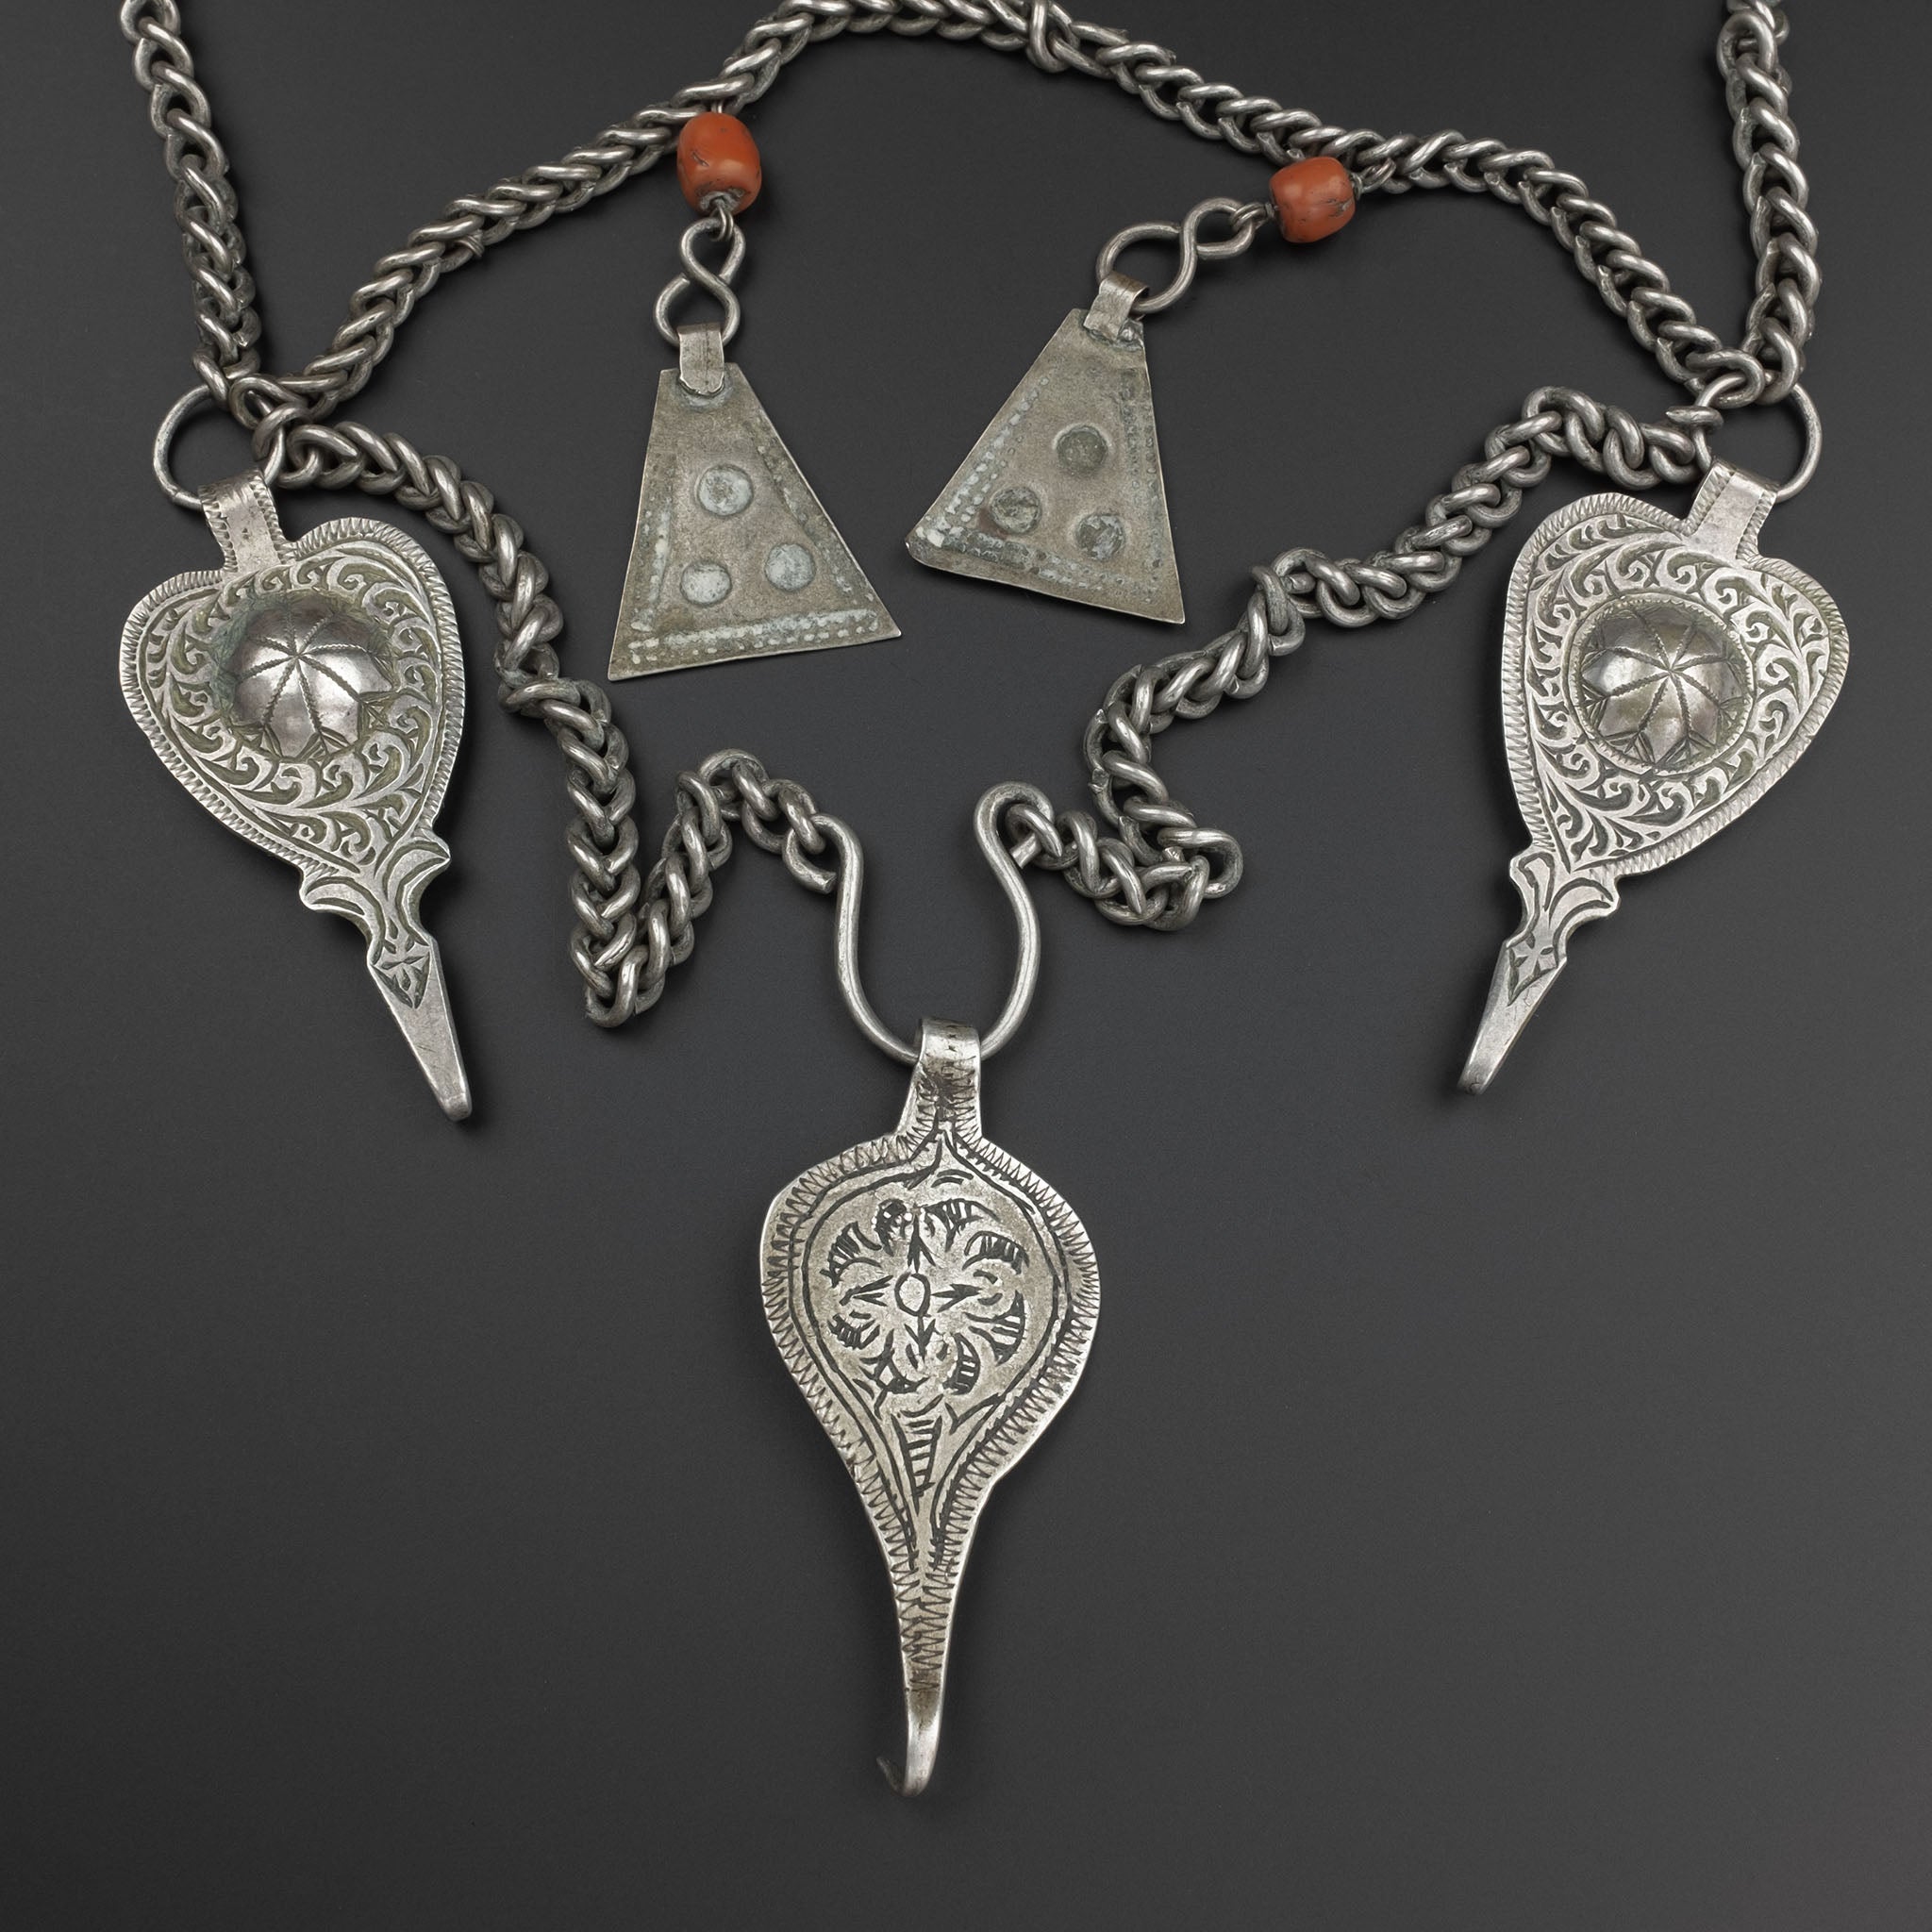 Antique Moroccan Silver Headdress & Temporals, Middle Atlas Mountains - RARE